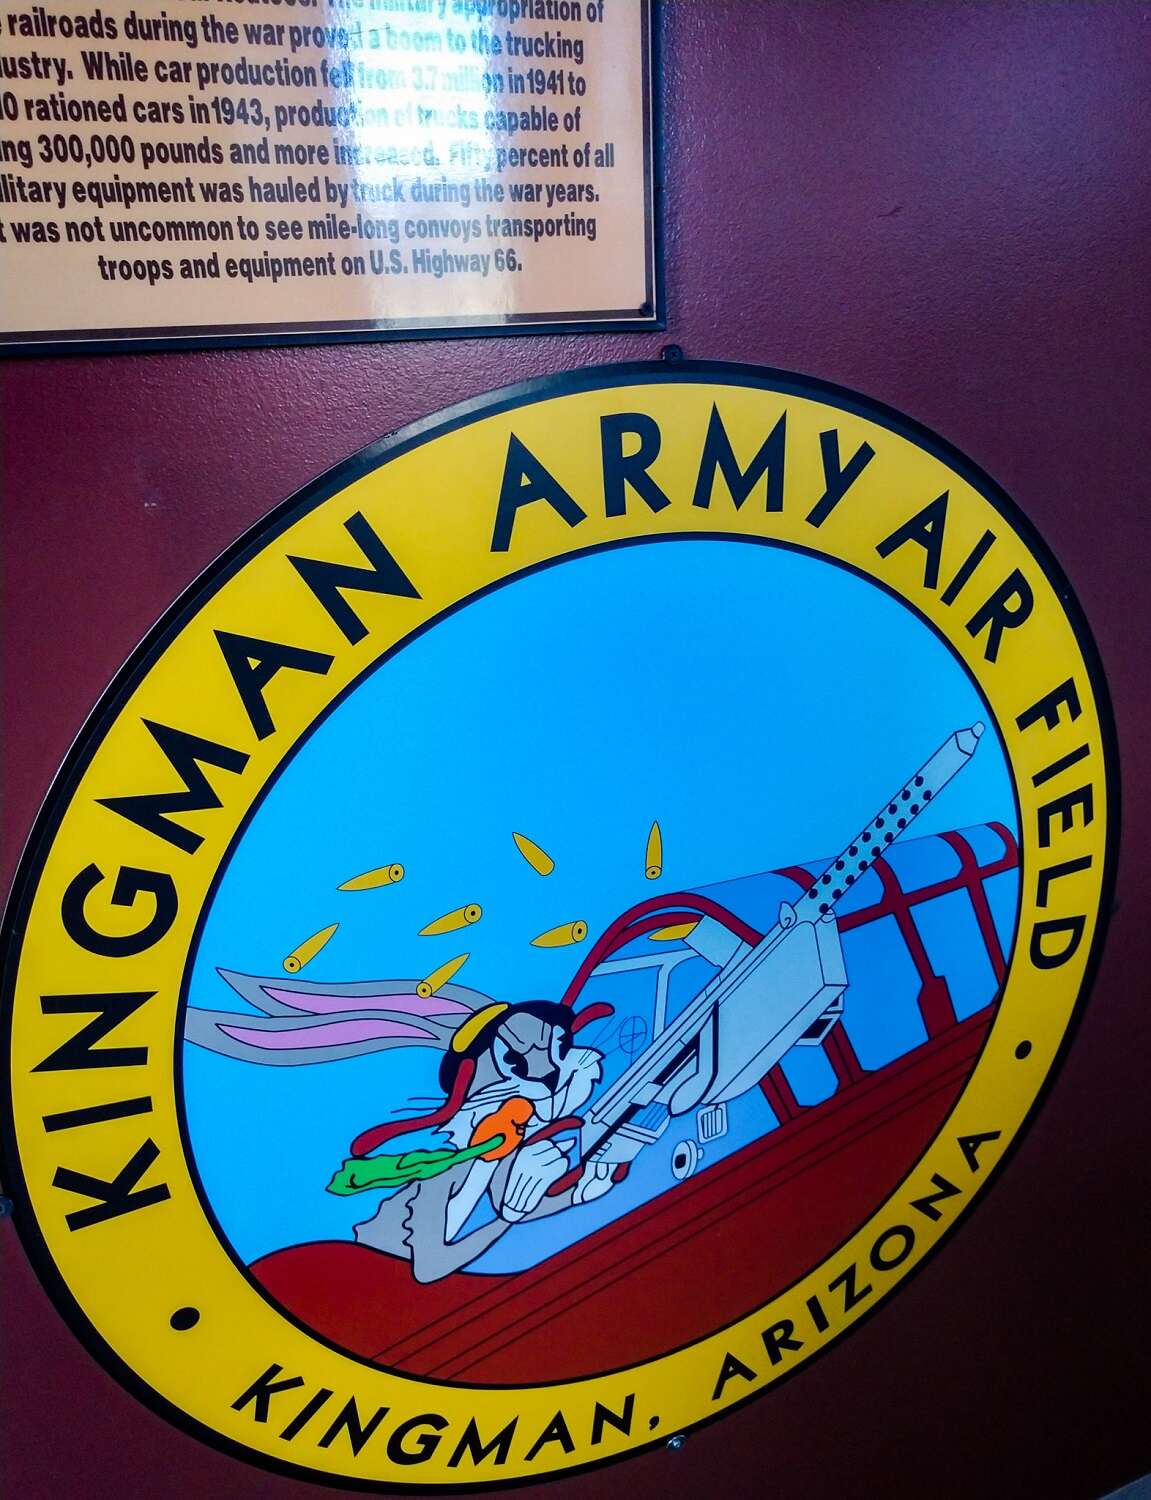 kingman army air field